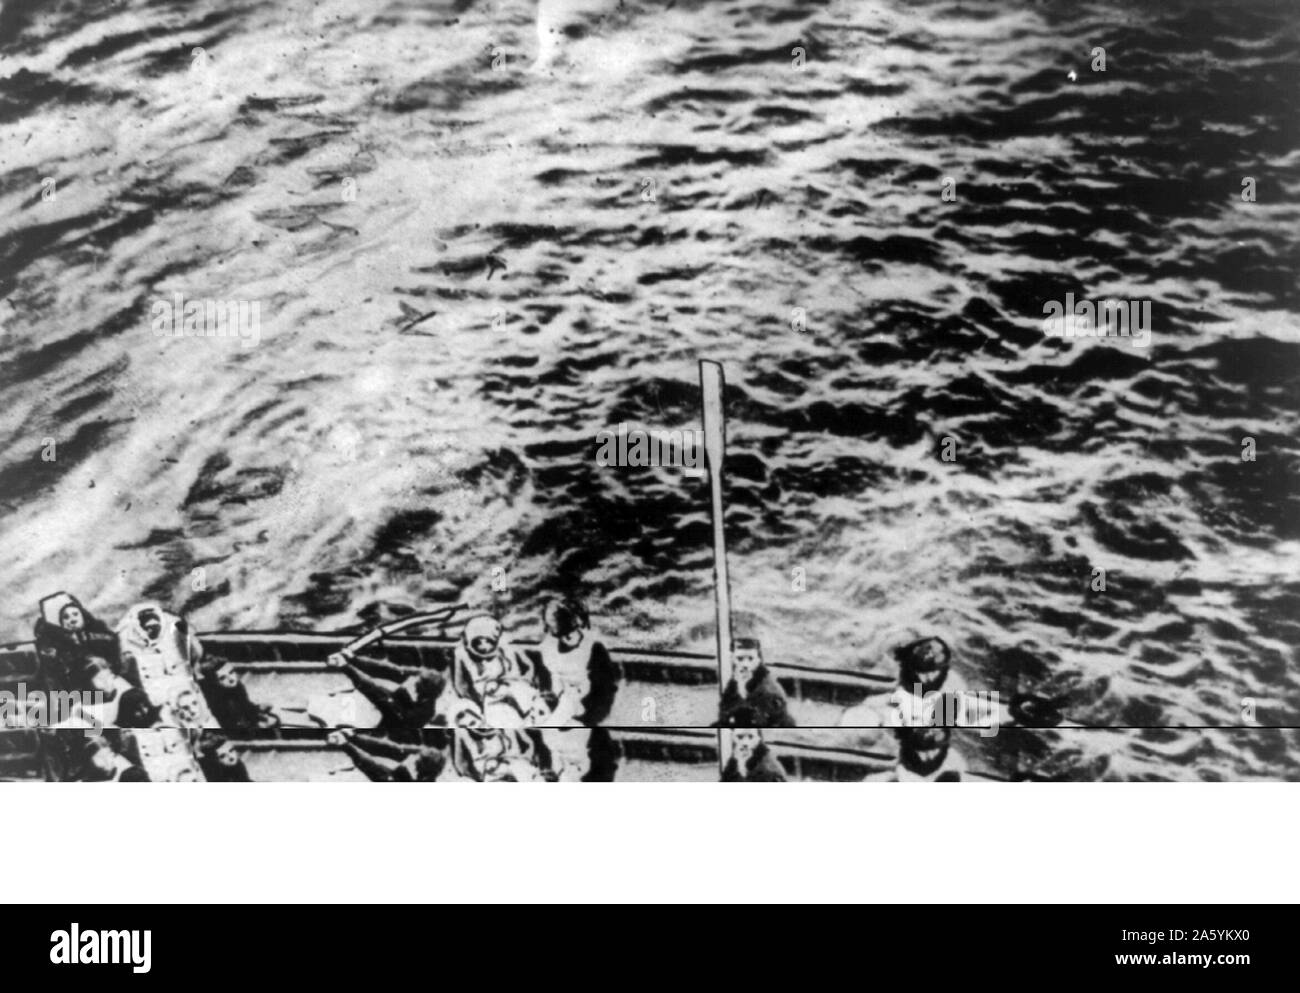 Verlust der Olympic White Star Line-Klasse RMS Titanic mit einem Eisberg am 12. April 1912 ihre Jungfernfahrt von Southampton nach New York getroffen. Eine Titanic Rettungsboot erreichte die Carpathia. Mehr als 1.500 Menschen ums Leben. Disaster Stockfoto